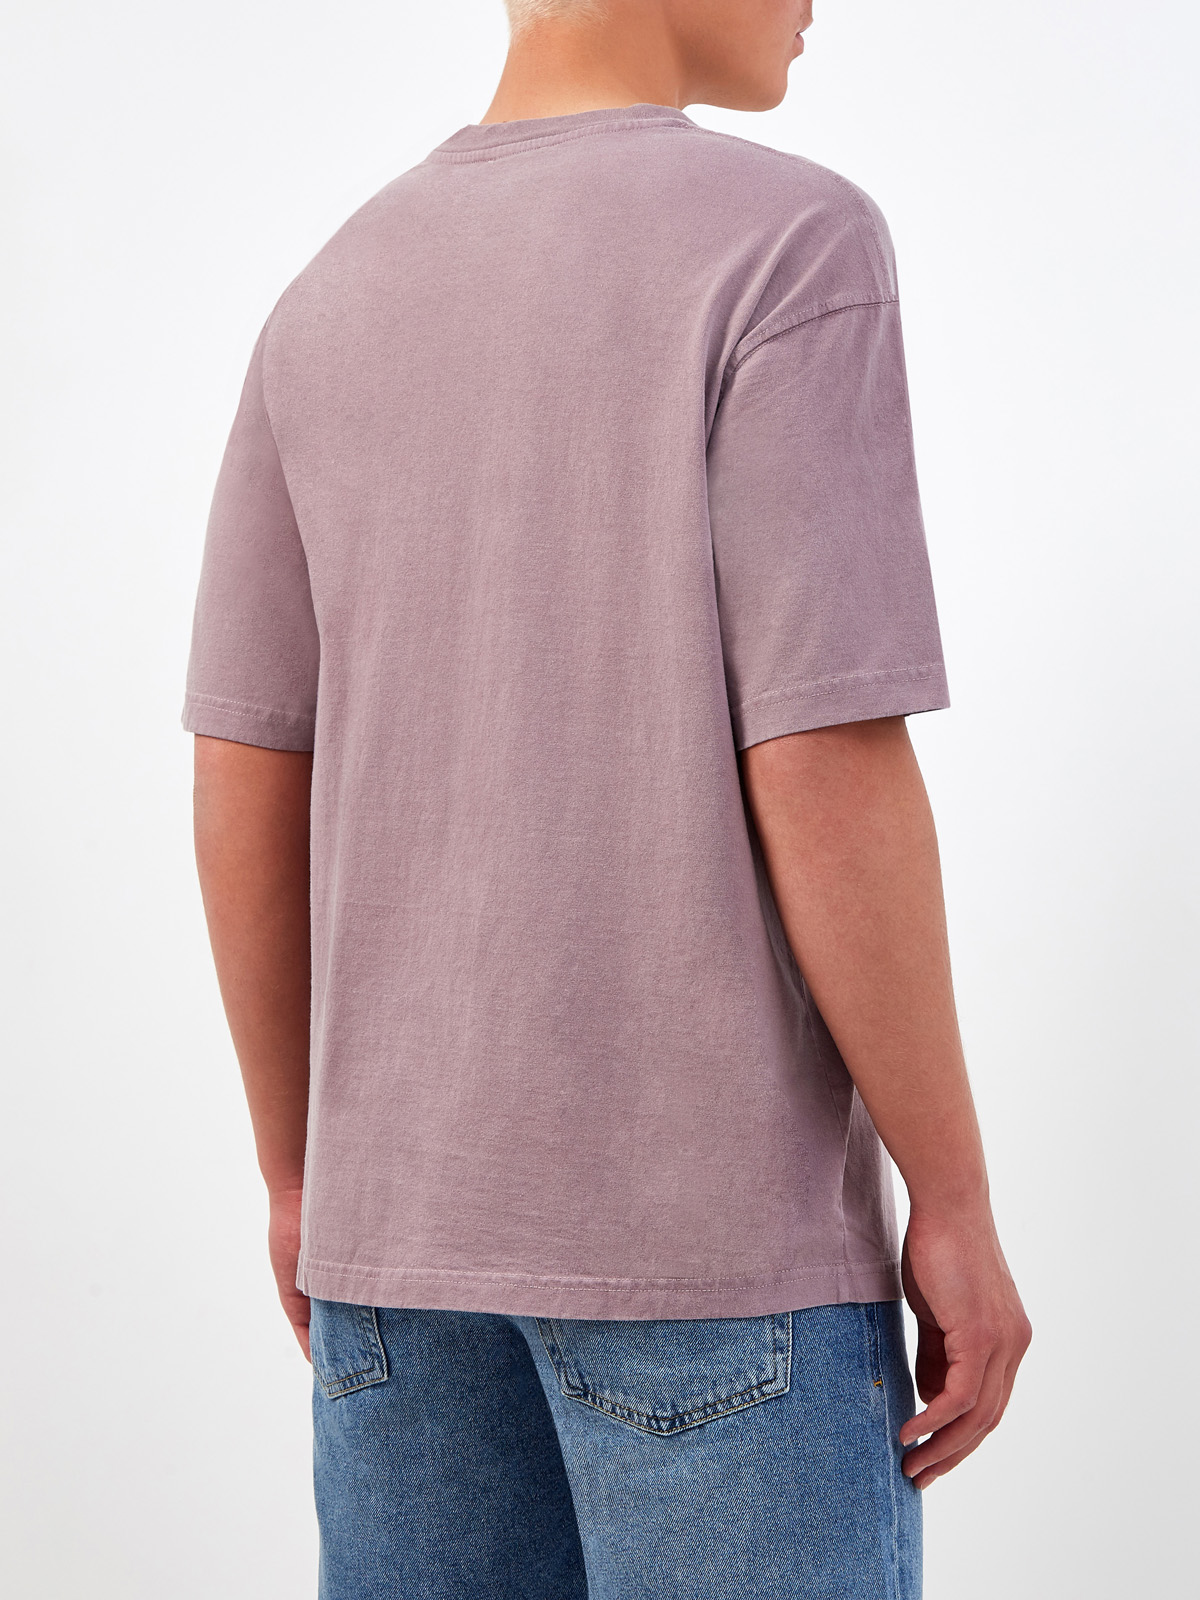 Хлопковая футболка с логотипом в многослойной технике DIESEL, цвет фиолетовый, размер S;L;XL;M - фото 4